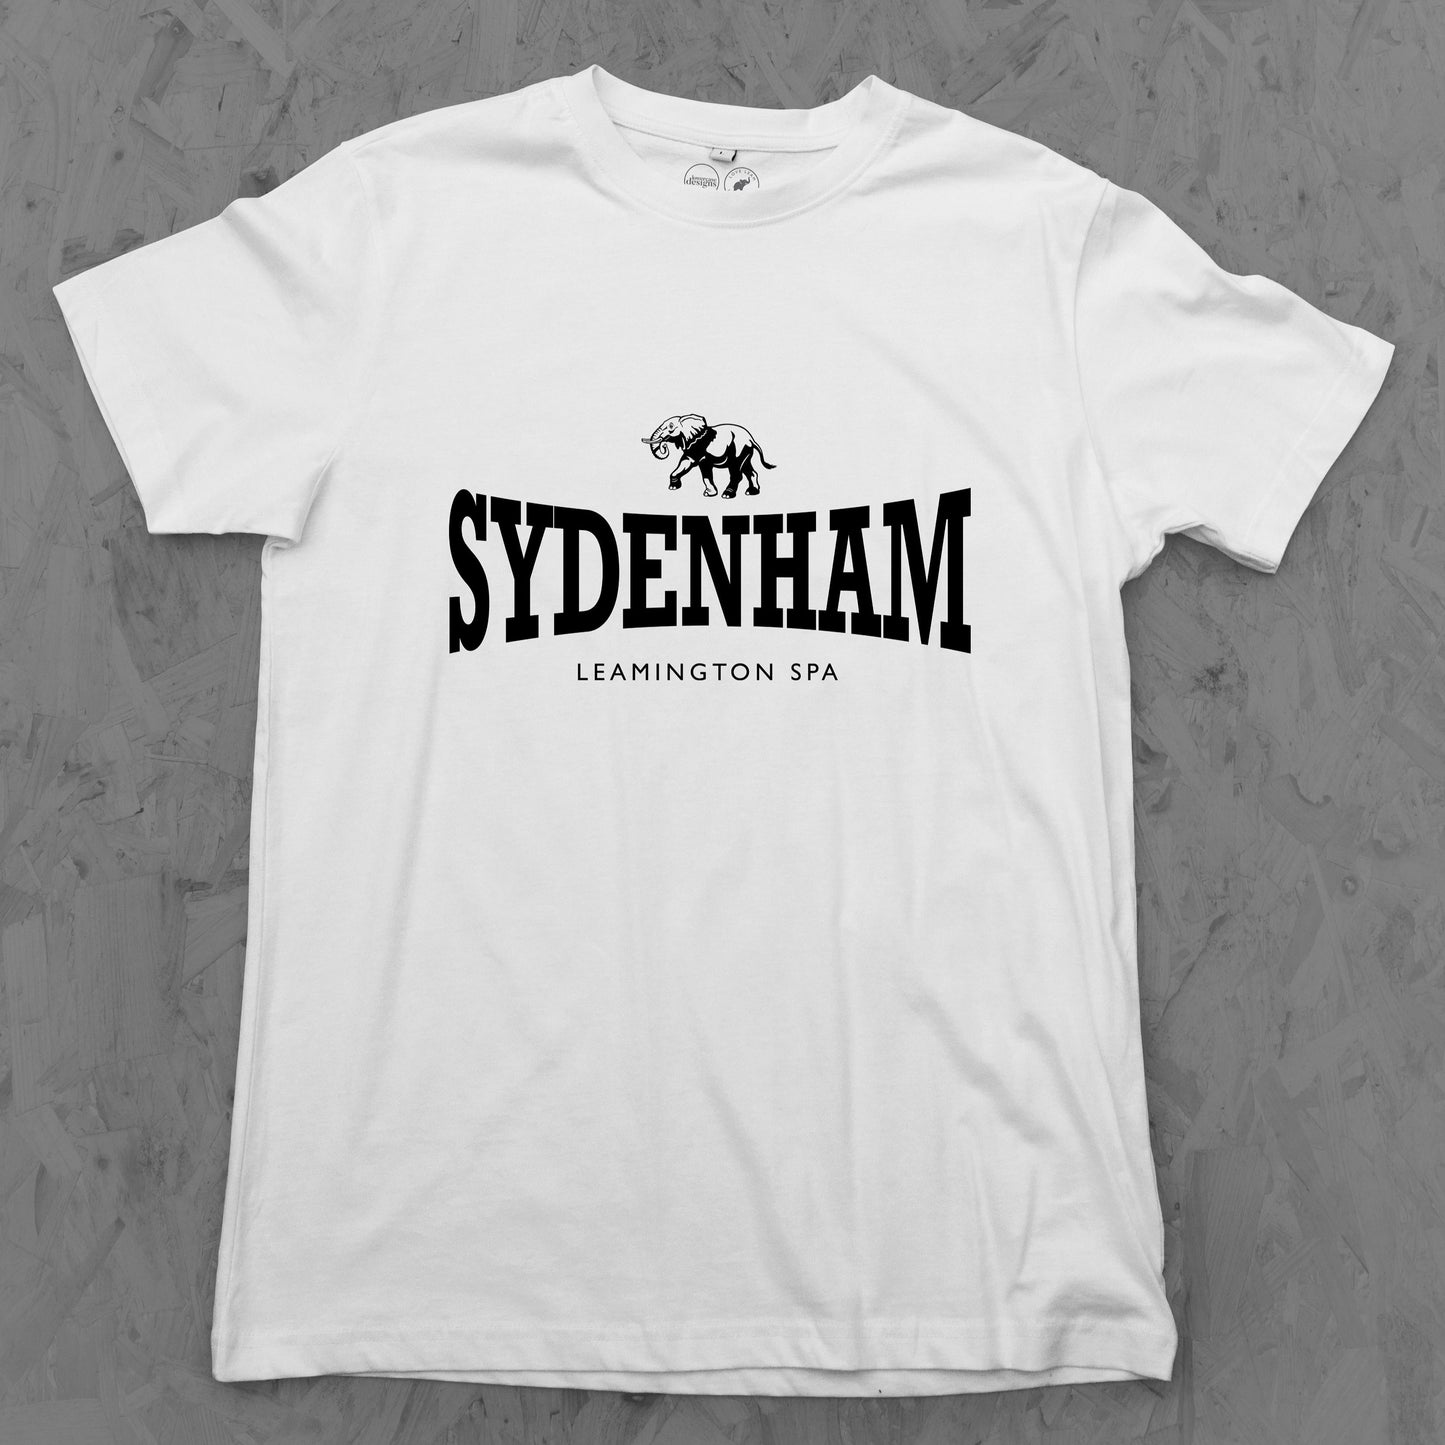 Sydenham Tee Child's sizes 3-14 years